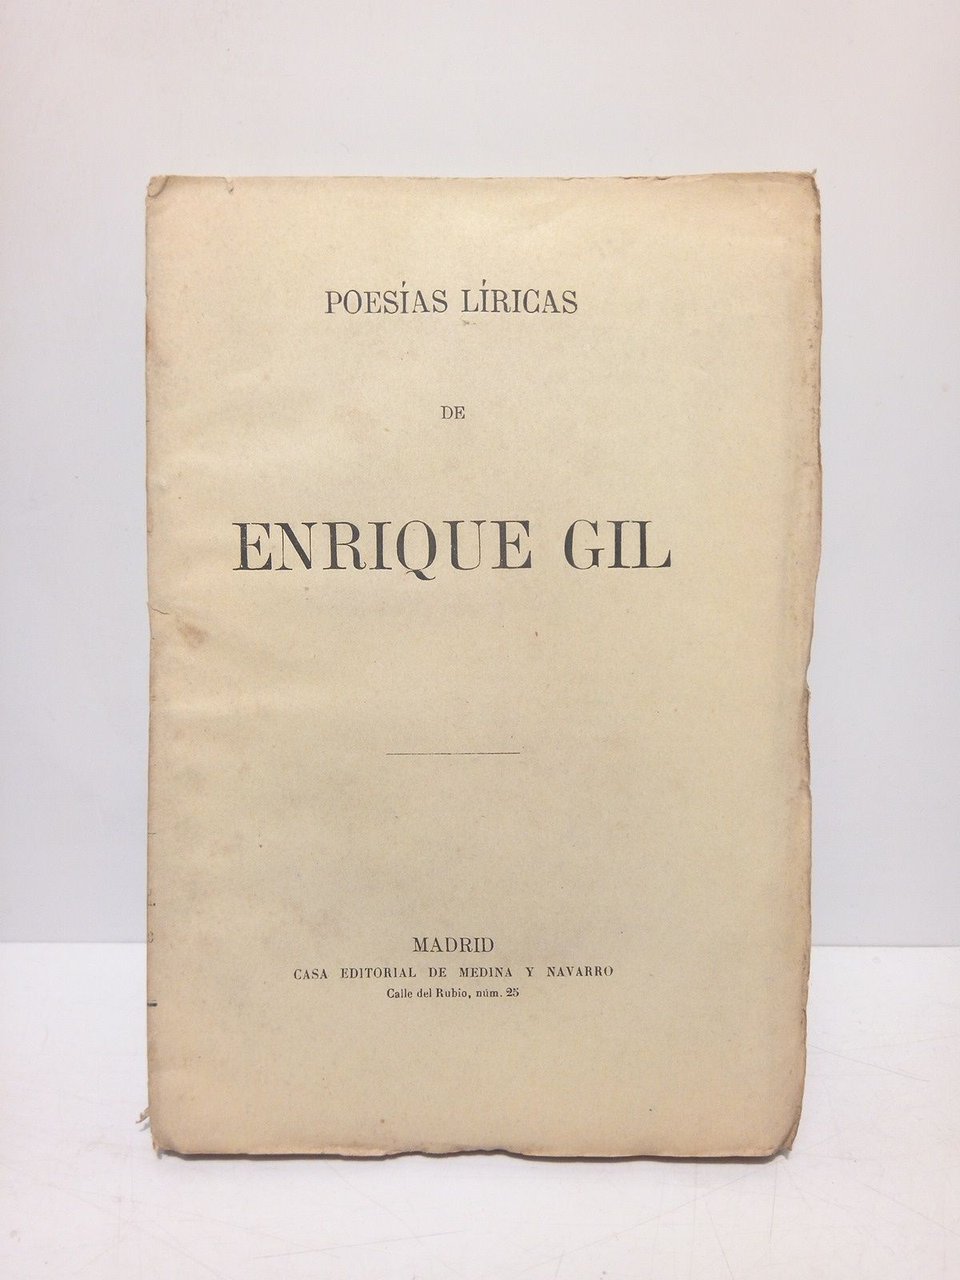 Obras de Enrique Gil ahora por primera vez reunidas en …